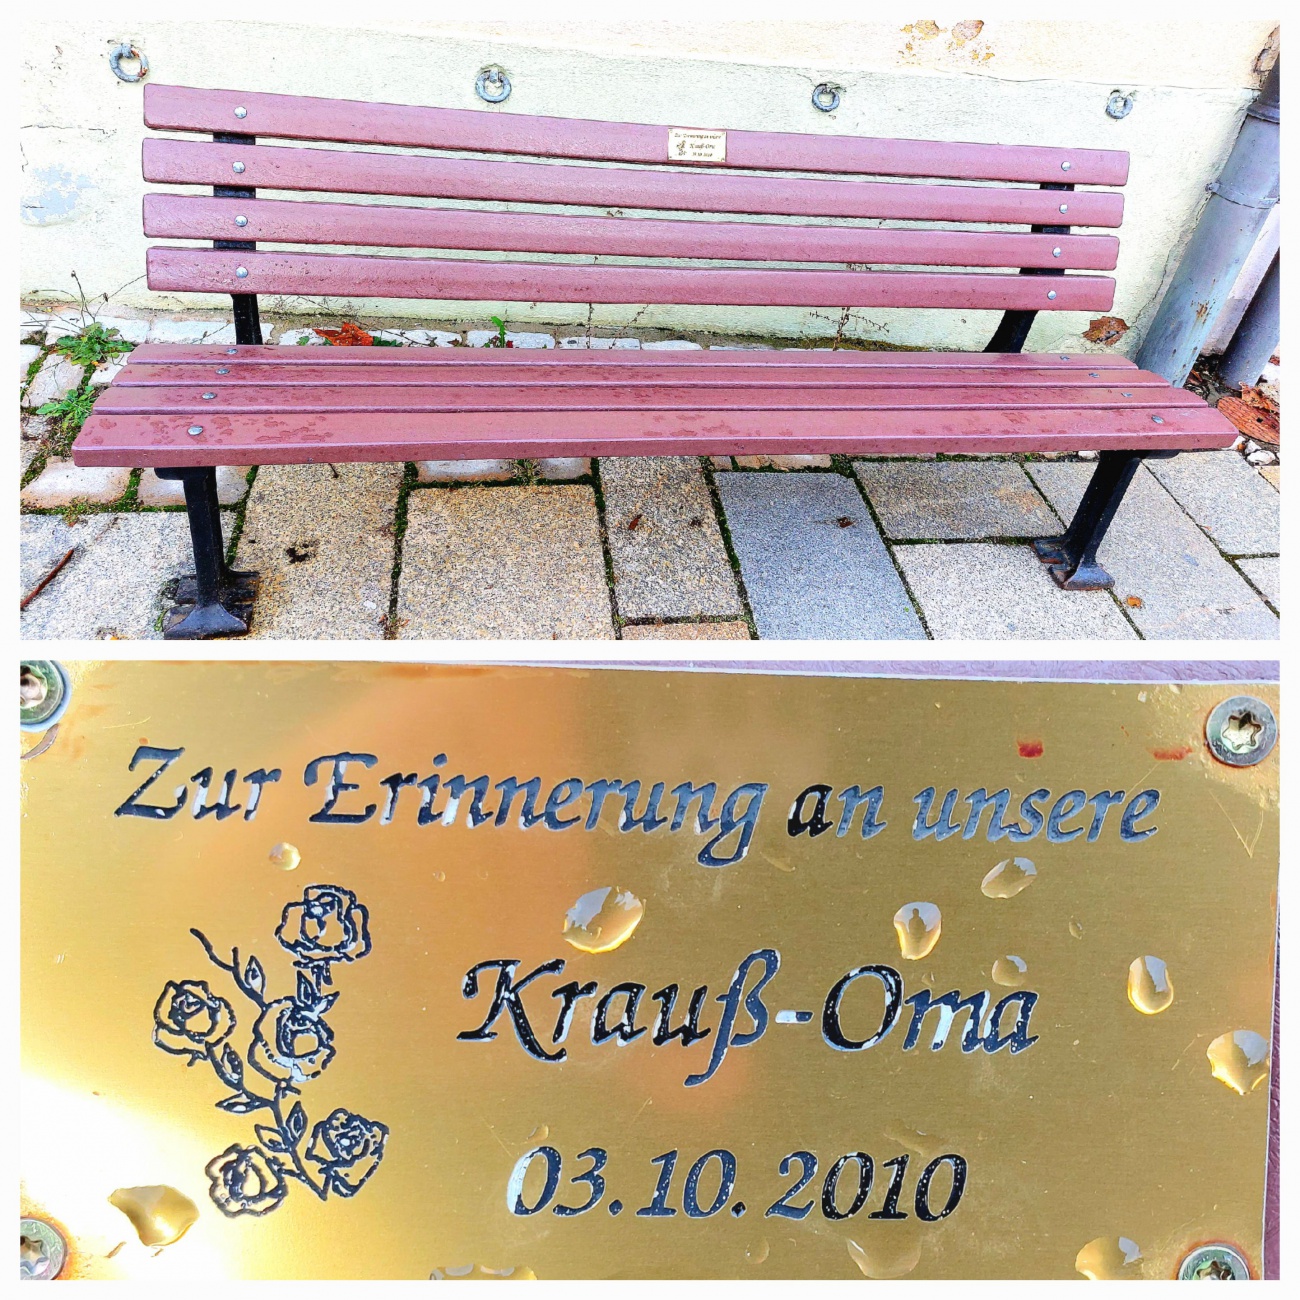 Foto: Martin Zehrer - Schönes Andenken in Kemnath...<br />
<br />
Eine Bank erinnert an die Oma! 